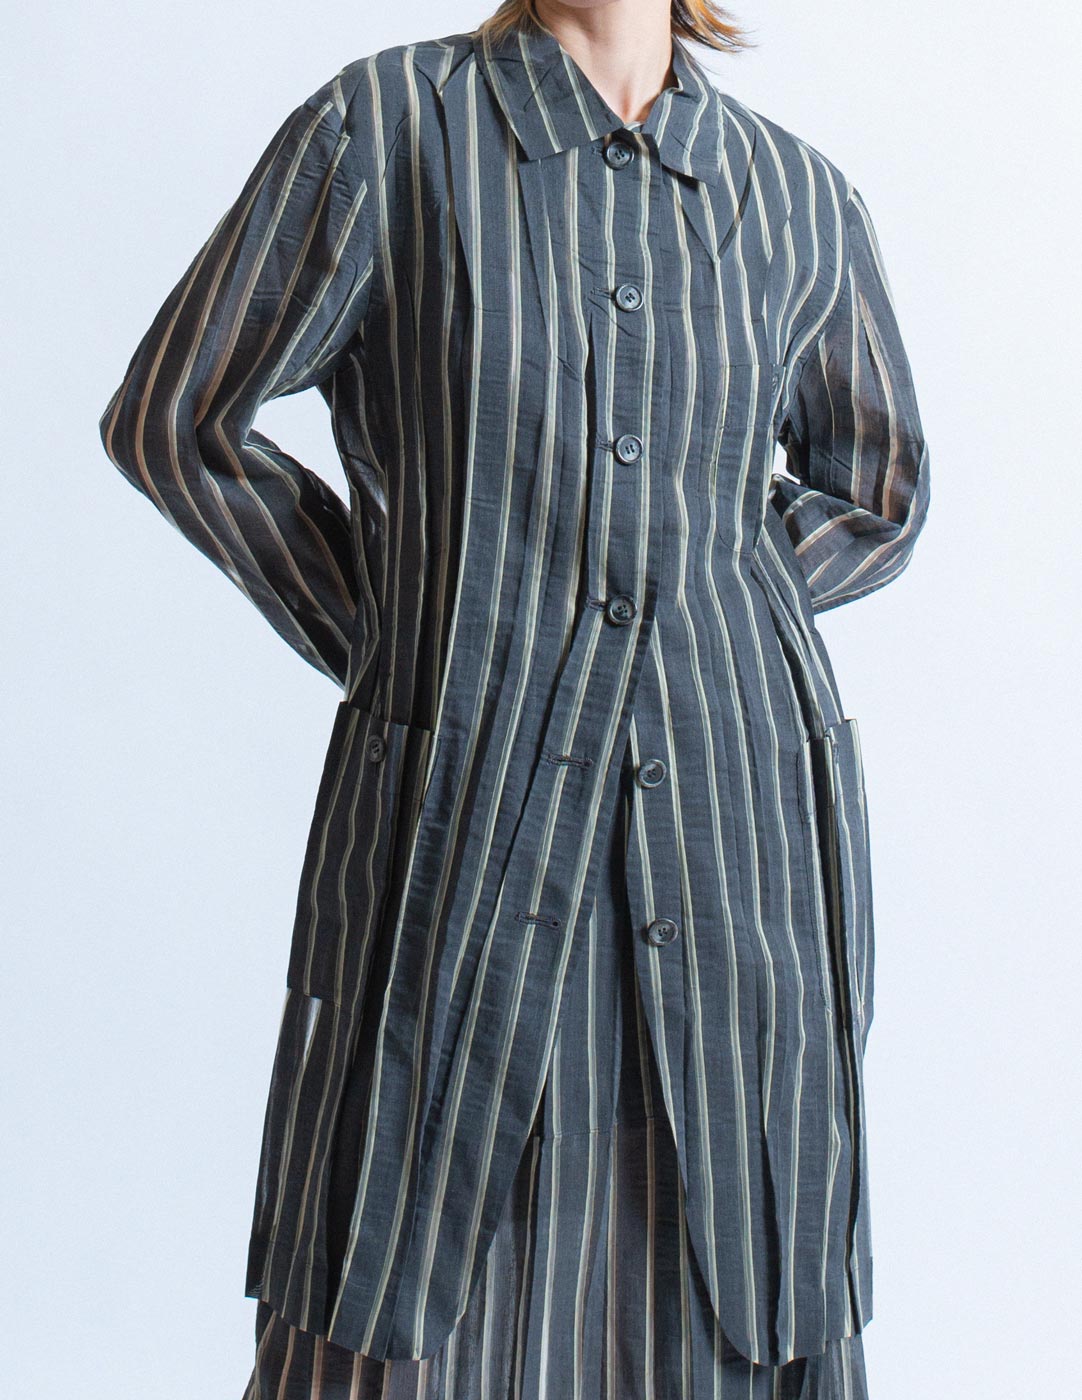 Issey Miyake vintage sheer striped shirt jacket detail